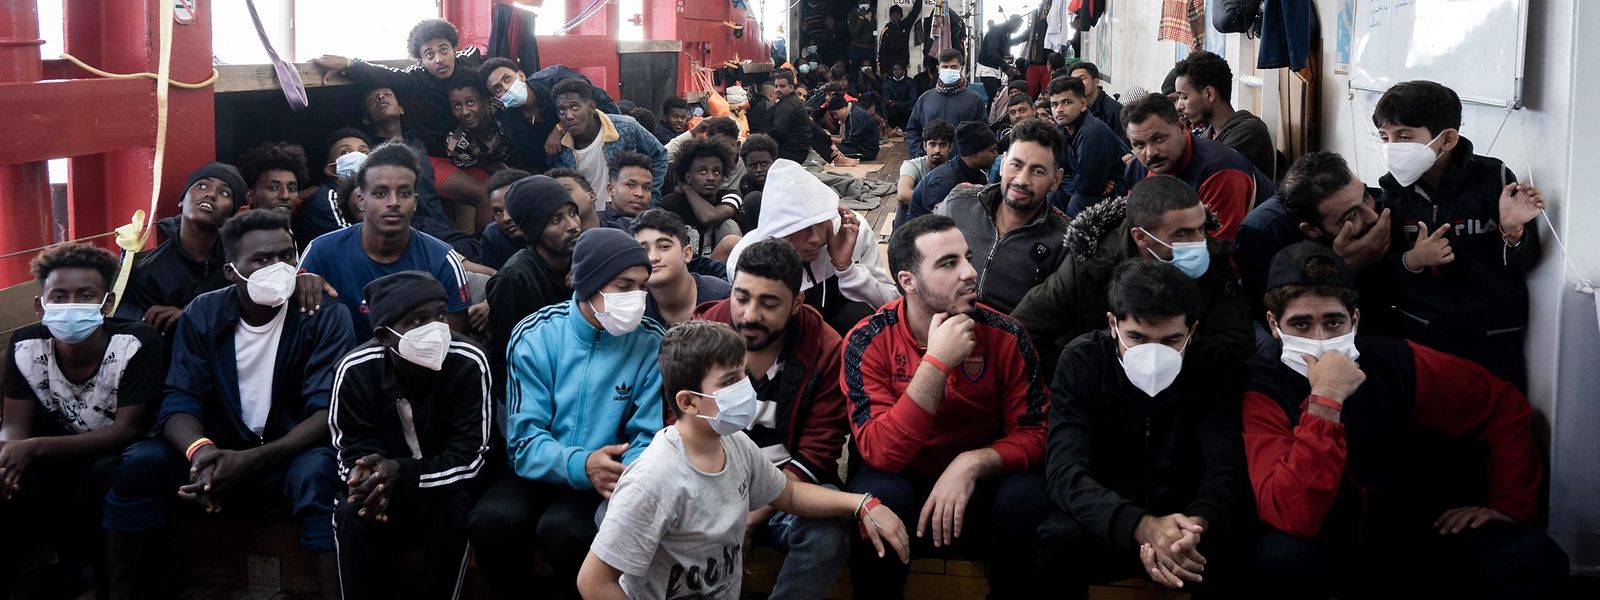 Drei Wochen lang haben 230 Migranten auf der "Ocean Viking" darauf gewartet, an Land zu gehen.